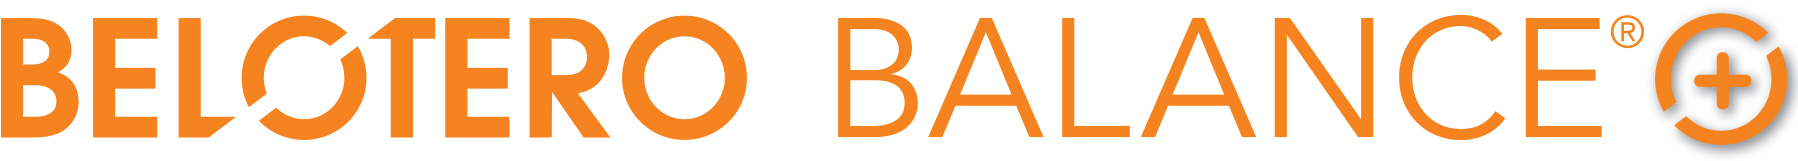 bb-logo-shadow